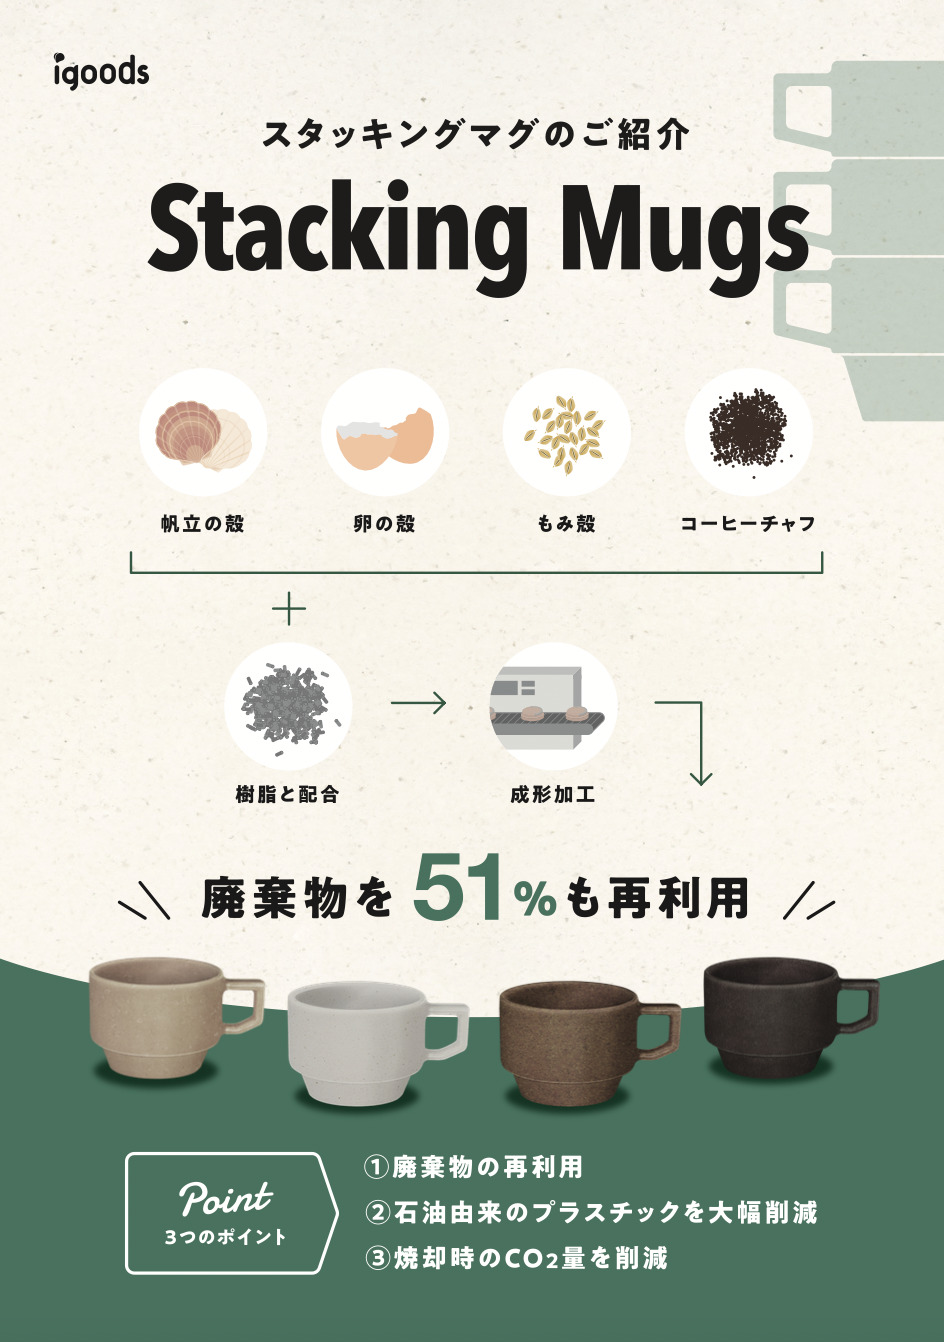 日本各地の廃棄物を再利用した「スタッキングマグ」